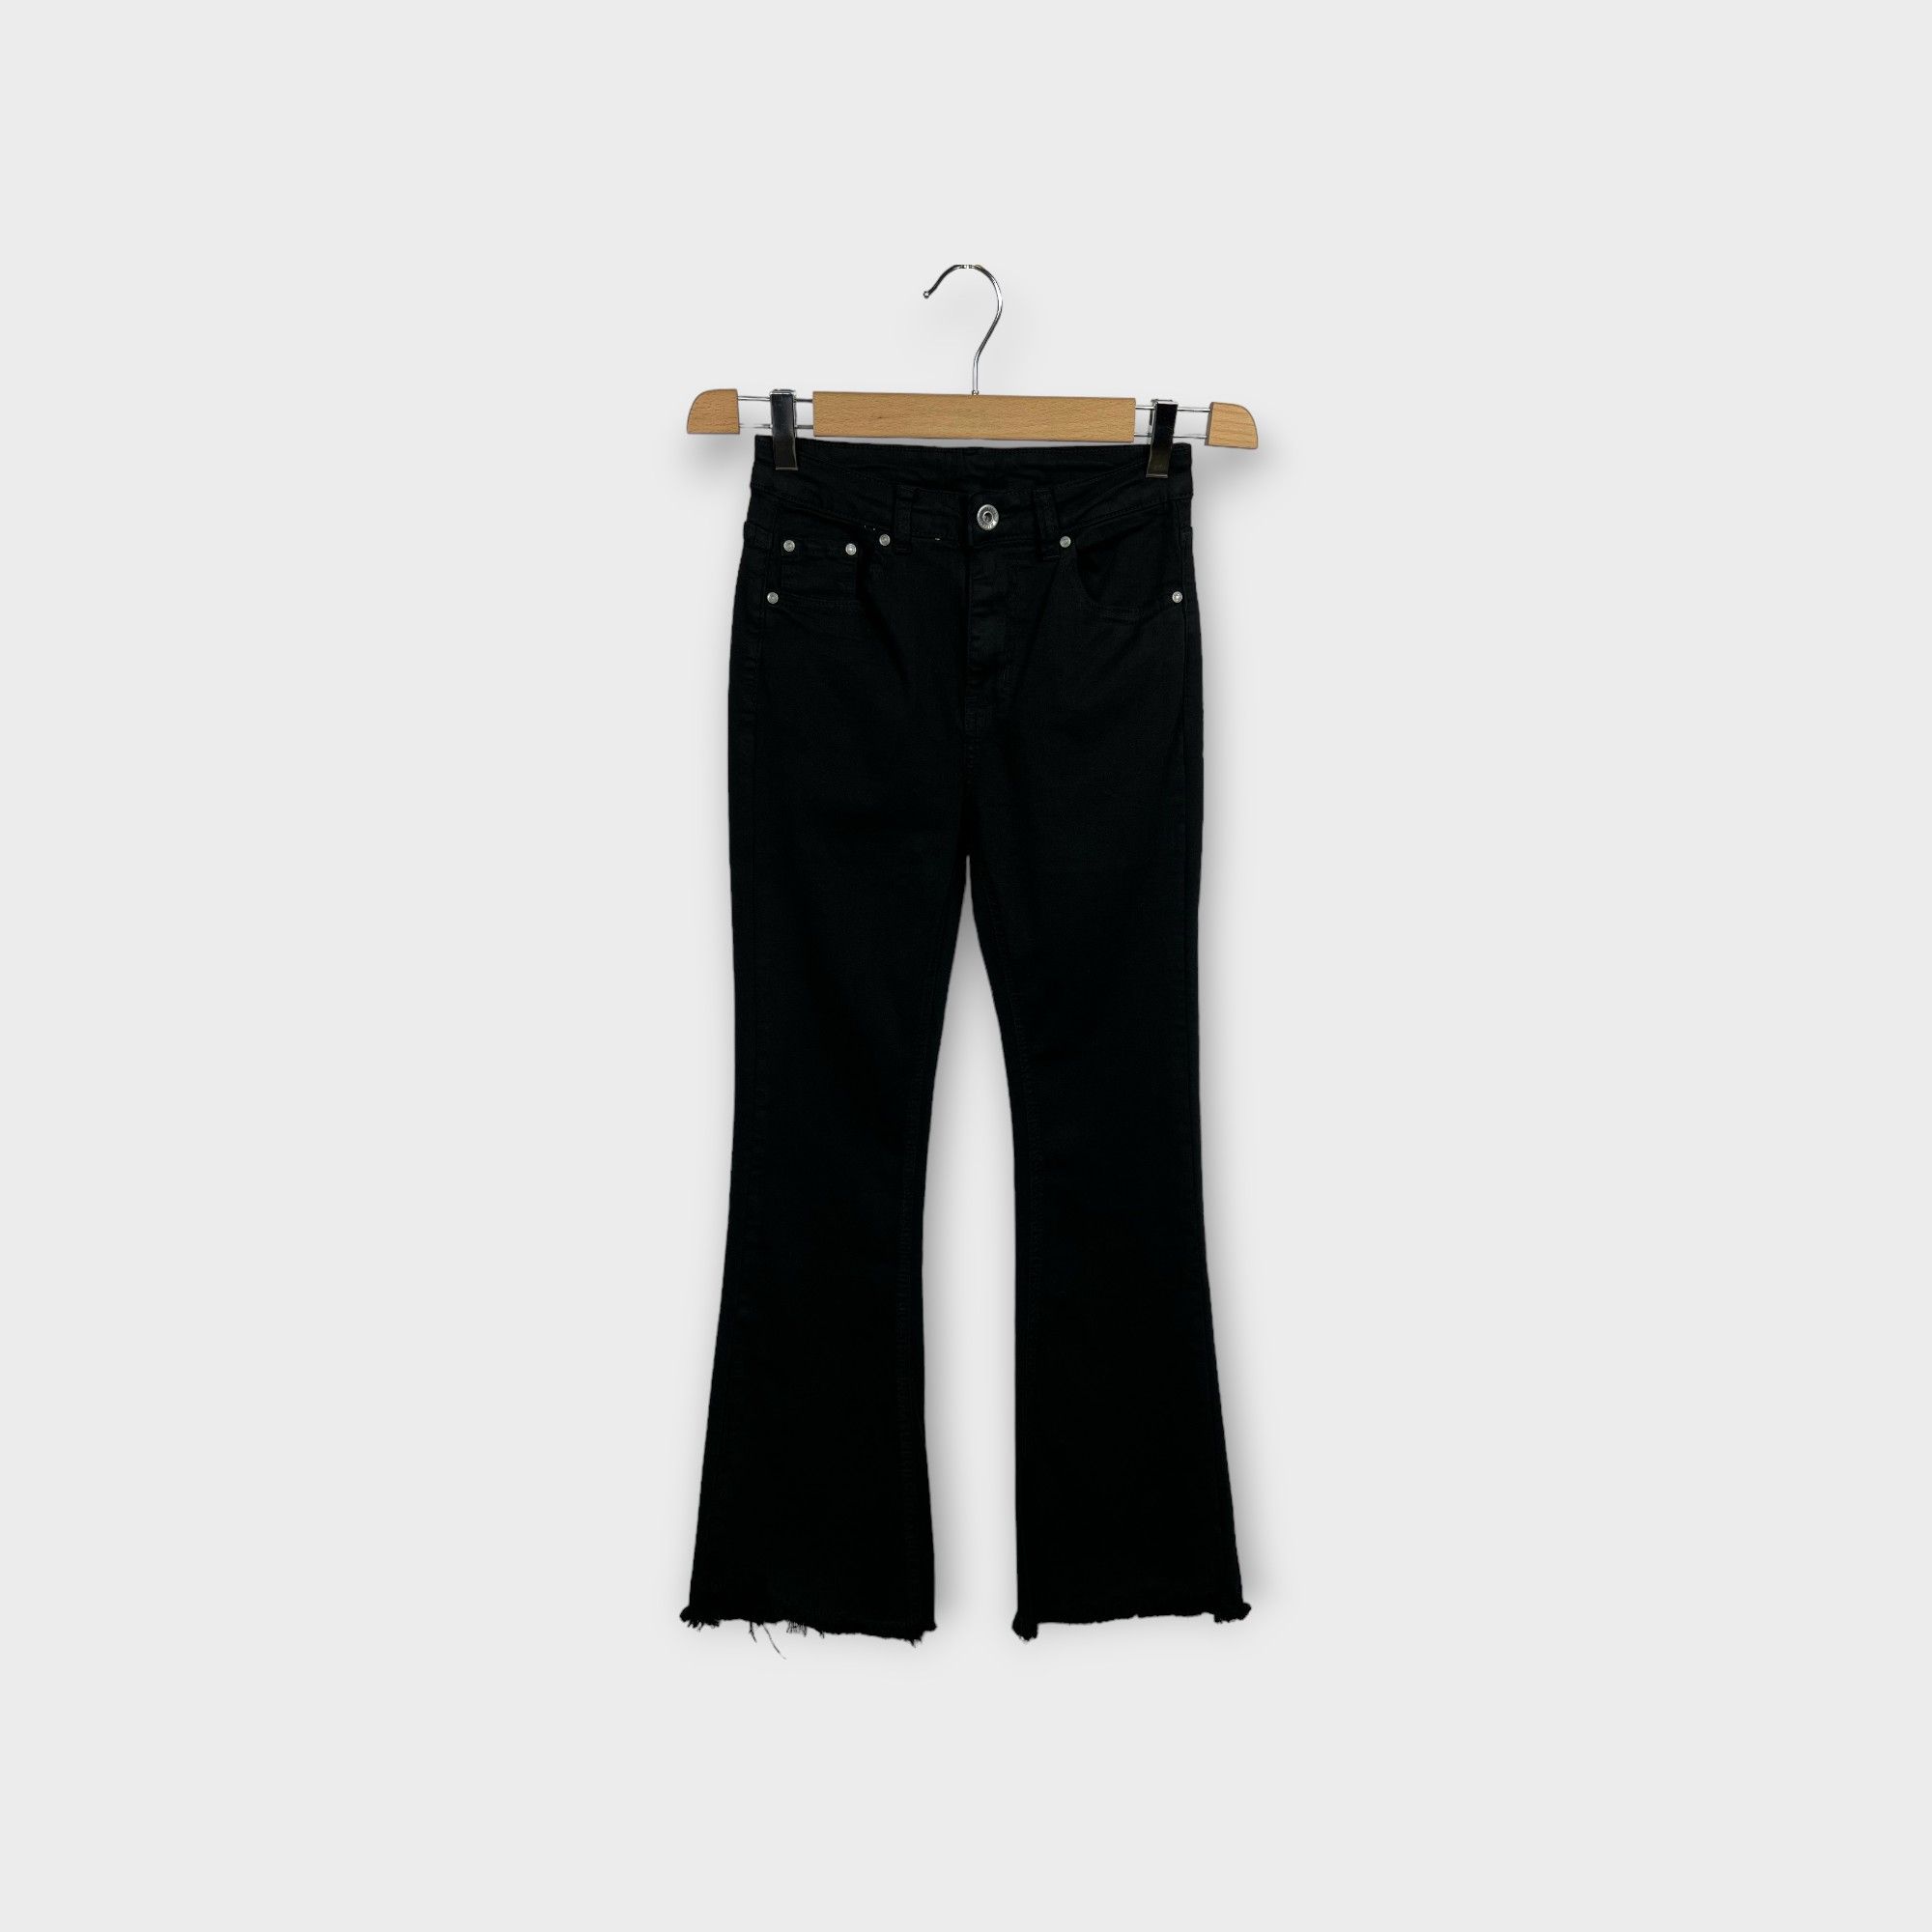 images/virtuemart/product/HELLEH Pantaloni donna modello cinque tasche in tela di cotone stretch con fondo a zampetta sfrangiata colore nero 1.jpg